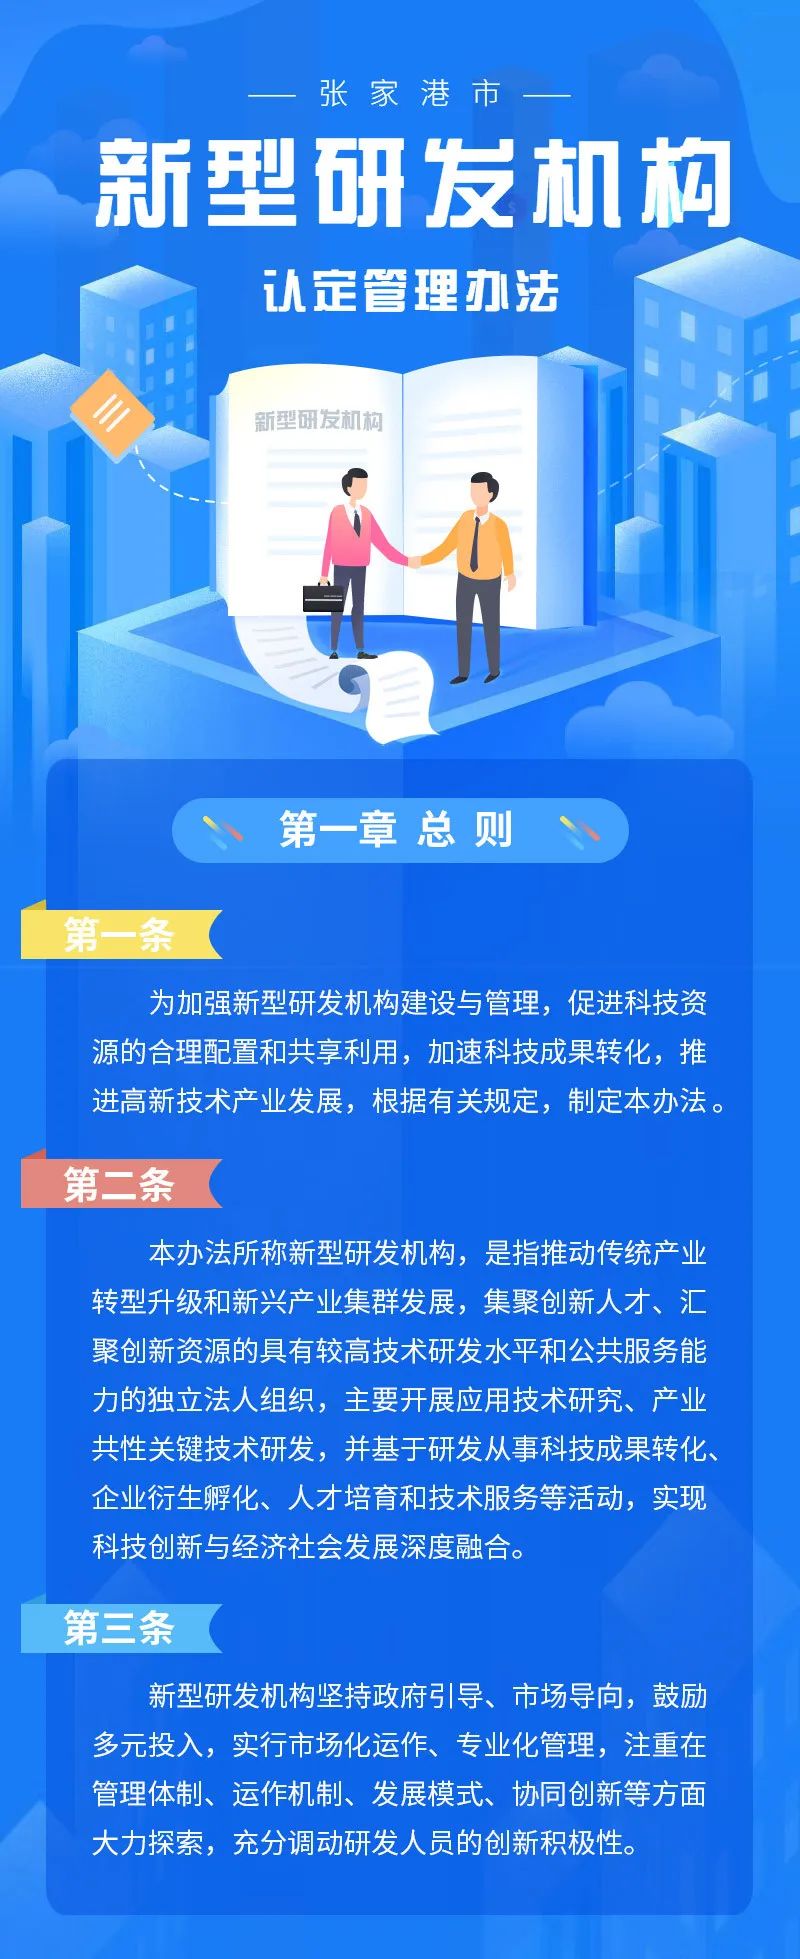 张家港市新型研发机构认定管理办法发布